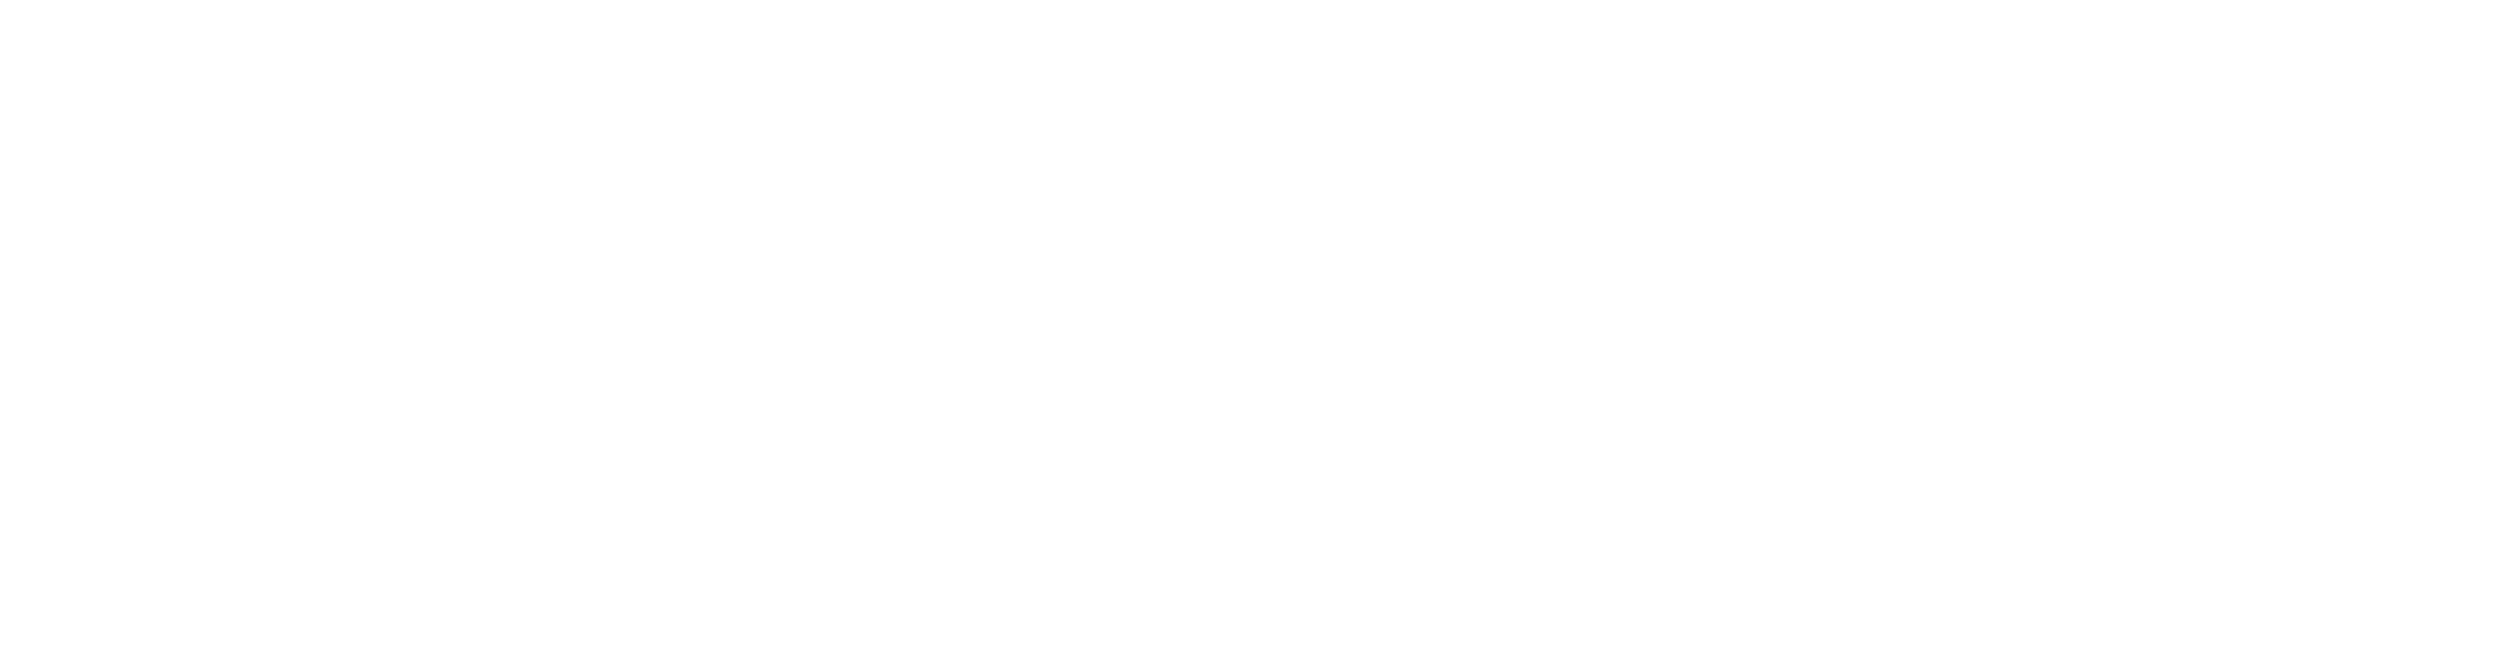 Marriott_logo_symbol_ white.png